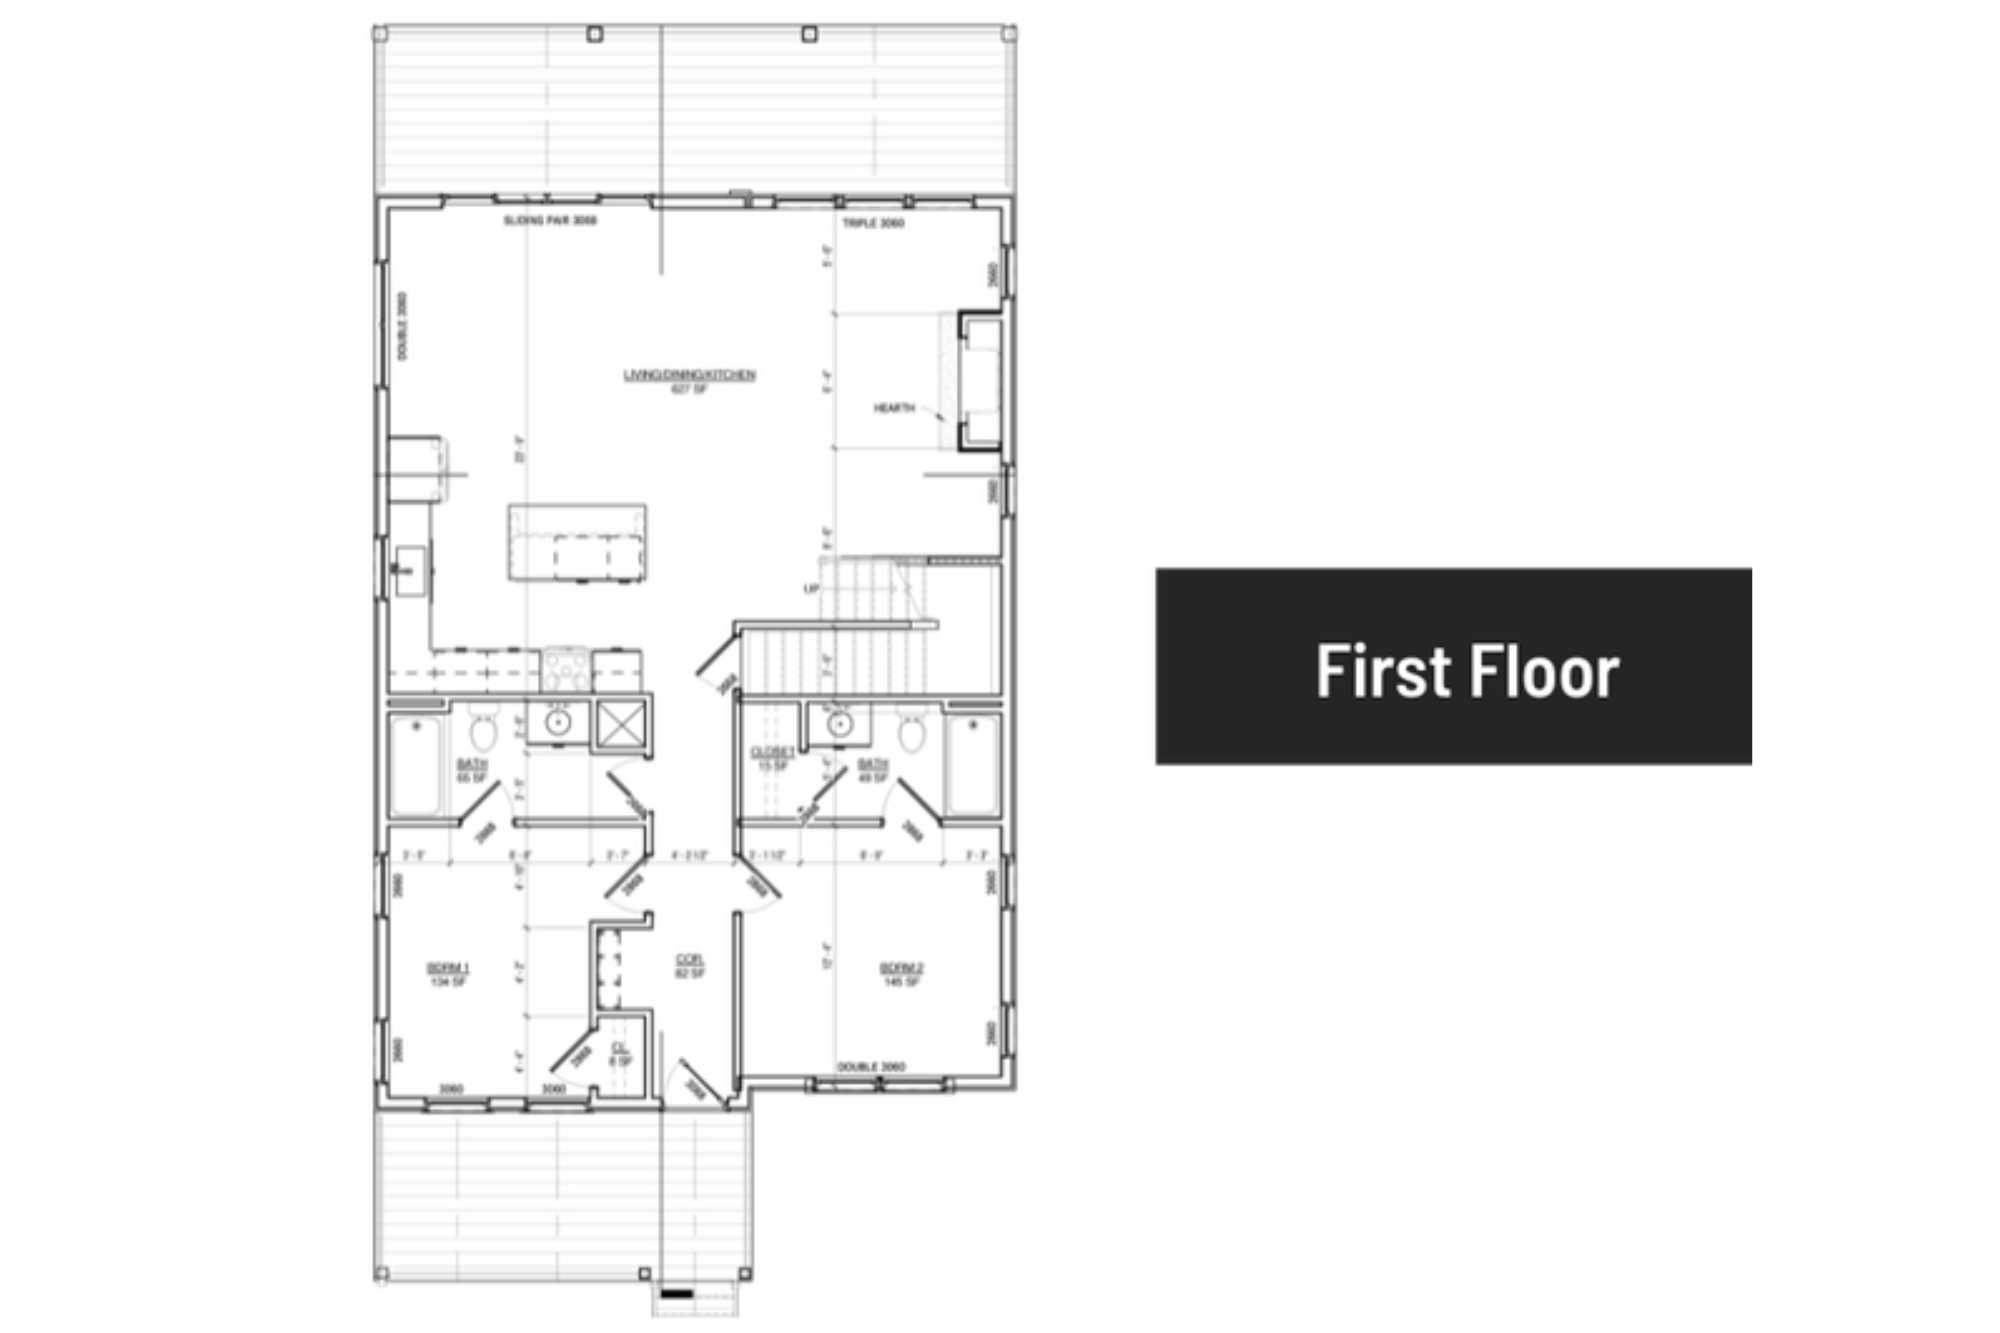 5 bedroom First Floor Floor Plan Smoky Mountain Cabins Reedmont Lodges